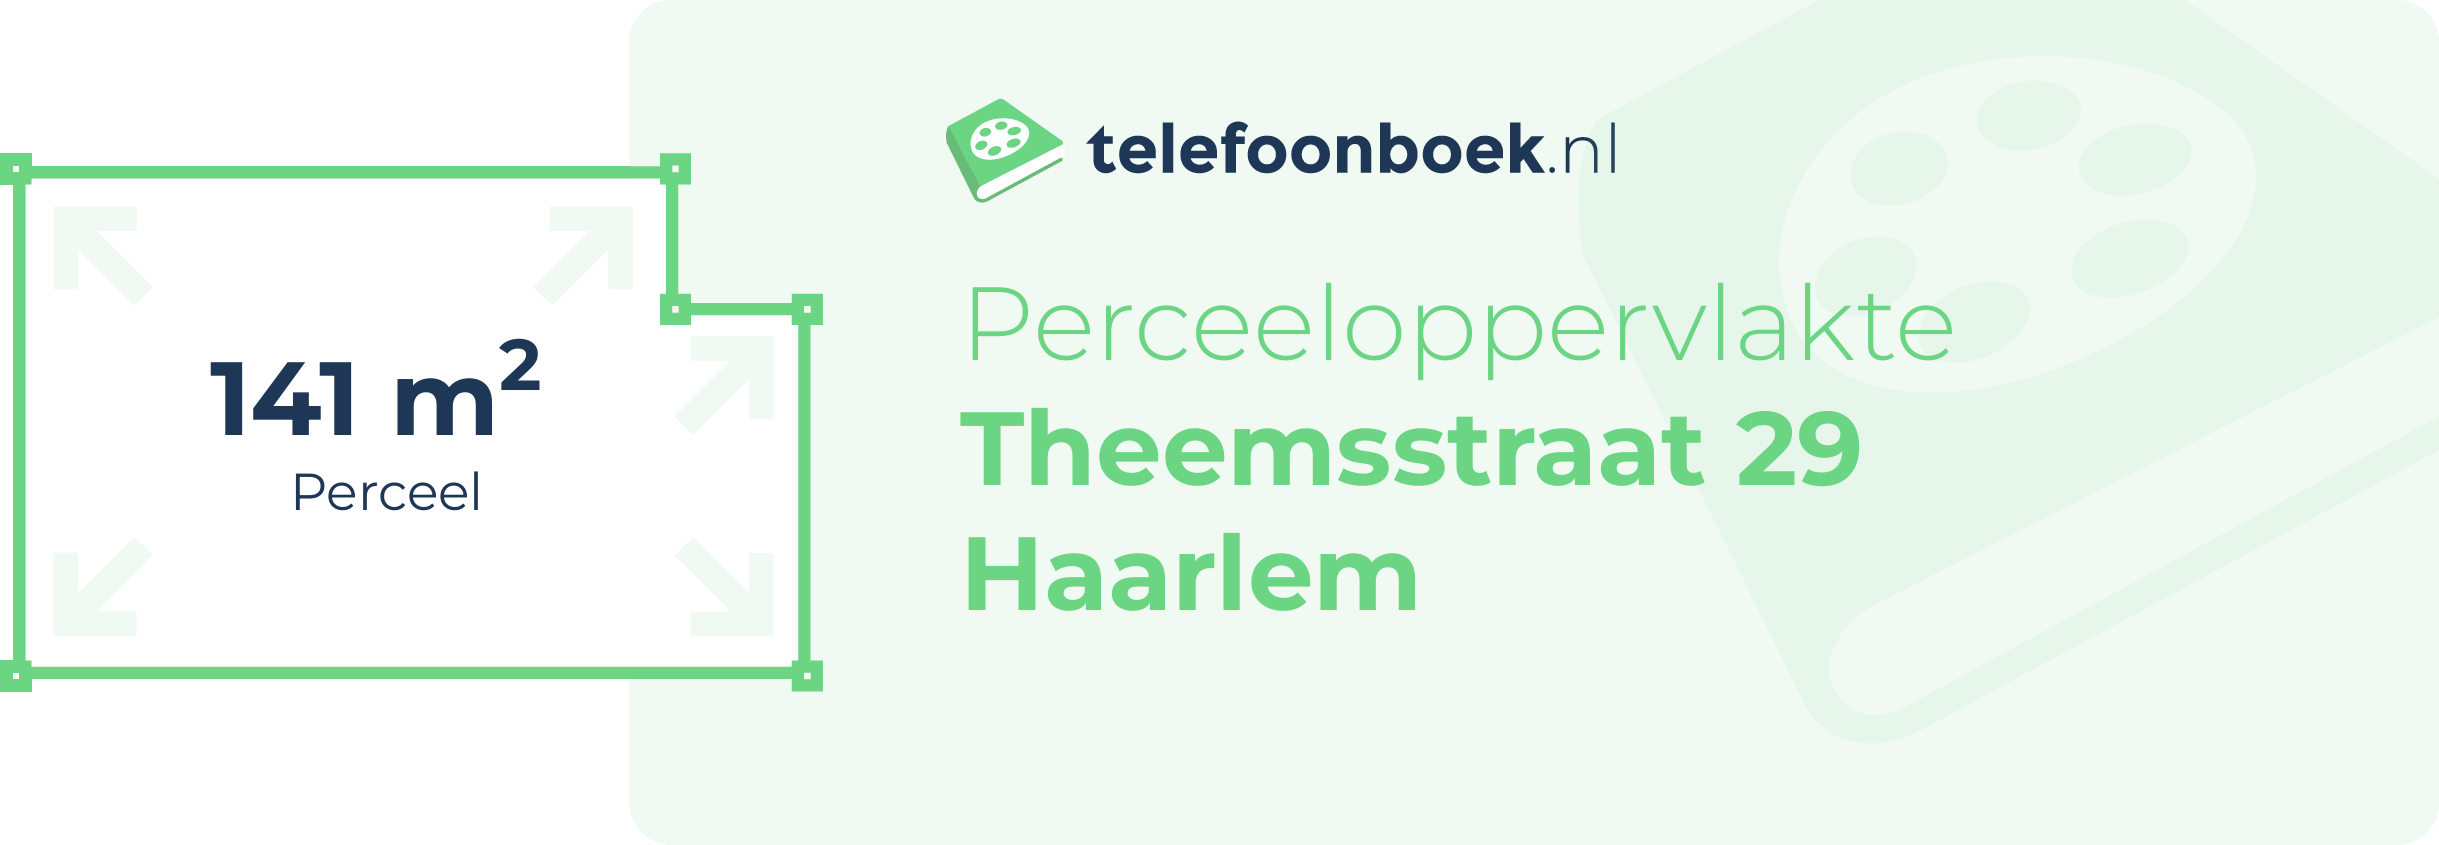 Perceeloppervlakte Theemsstraat 29 Haarlem